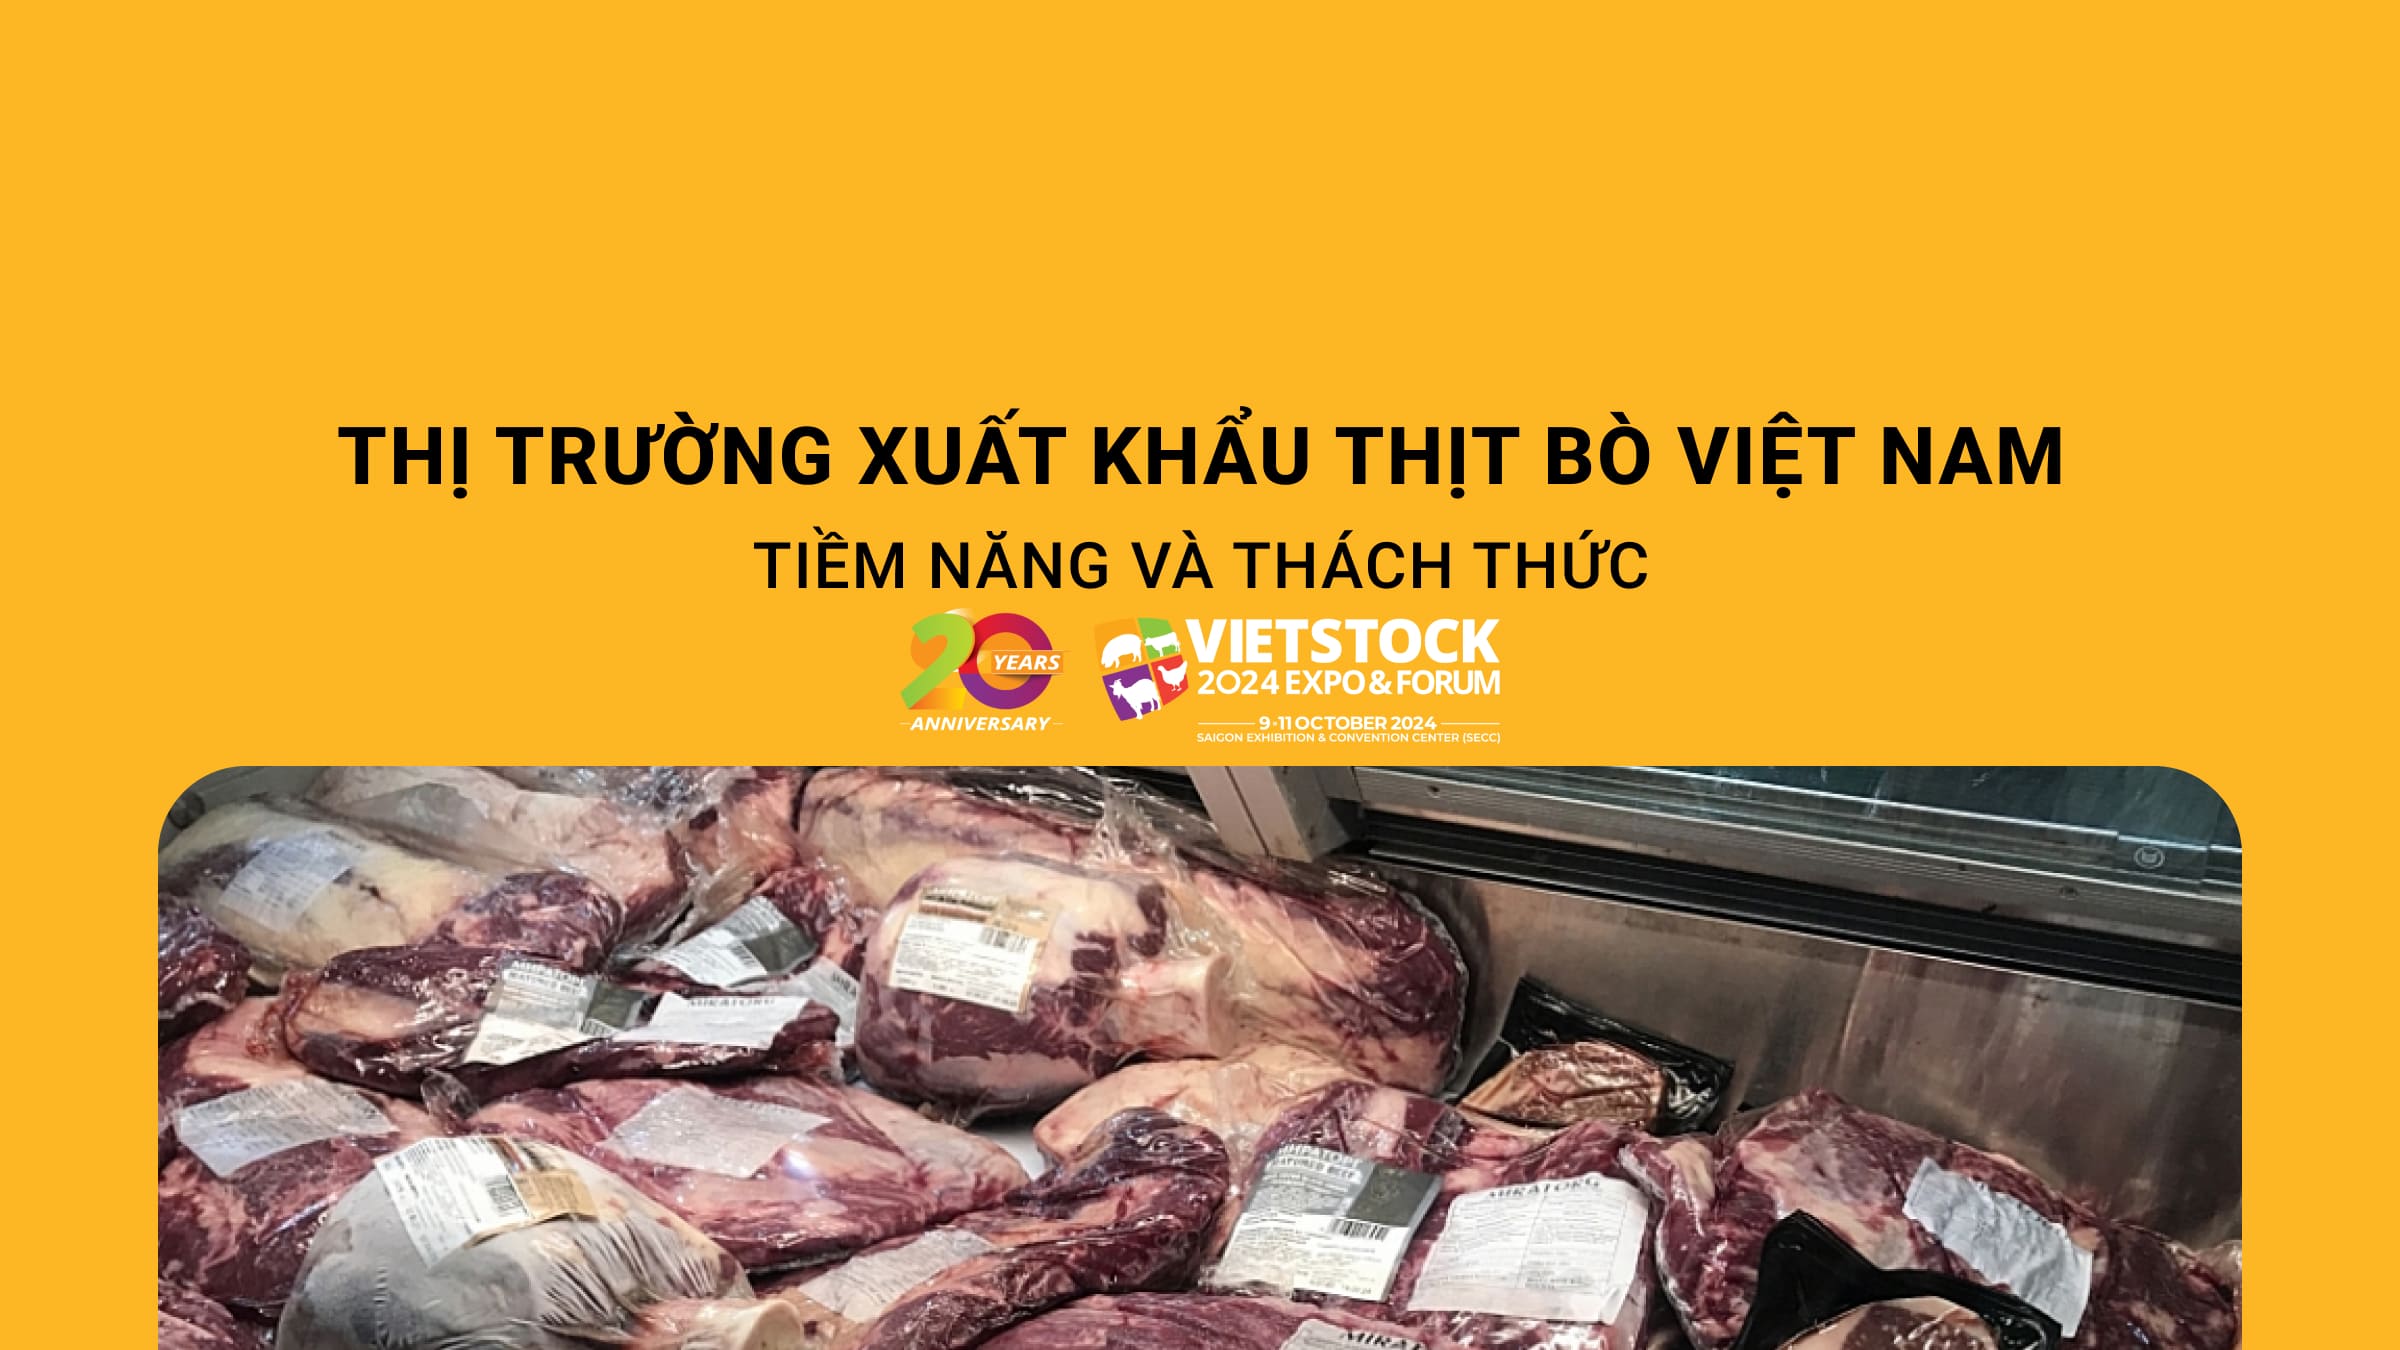 Thị trường xuất khẩu thịt bò Việt Nam – Tiềm năng và thách thức